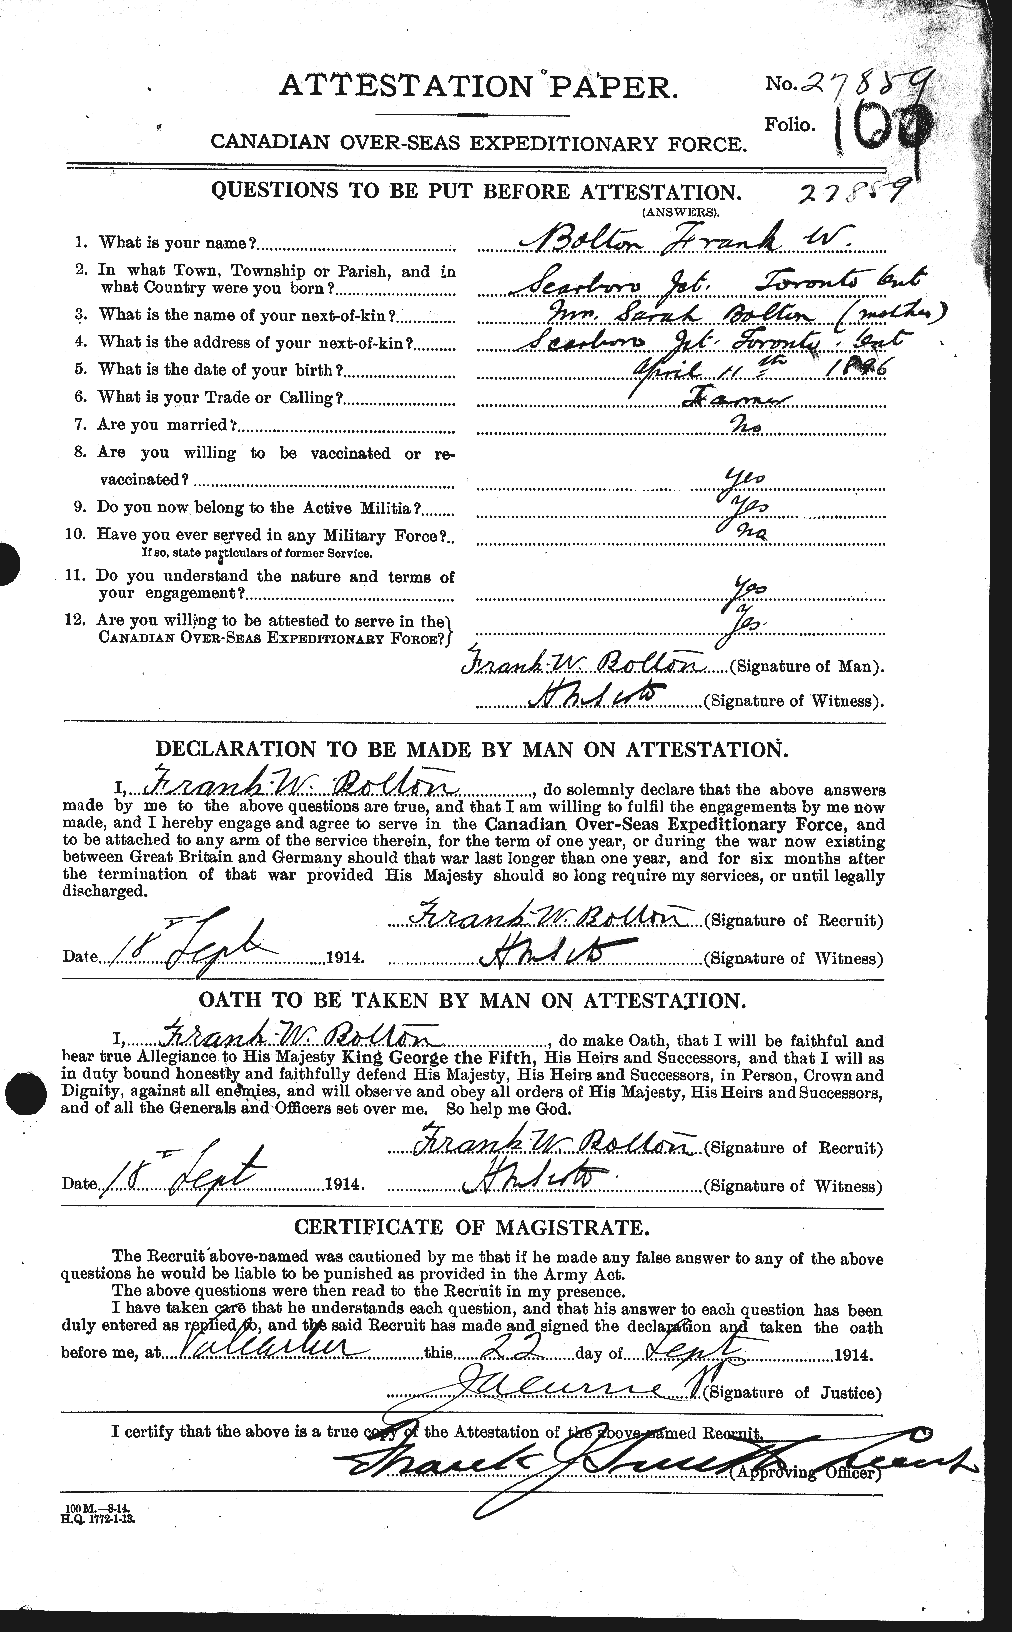 Dossiers du Personnel de la Première Guerre mondiale - CEC 250014a